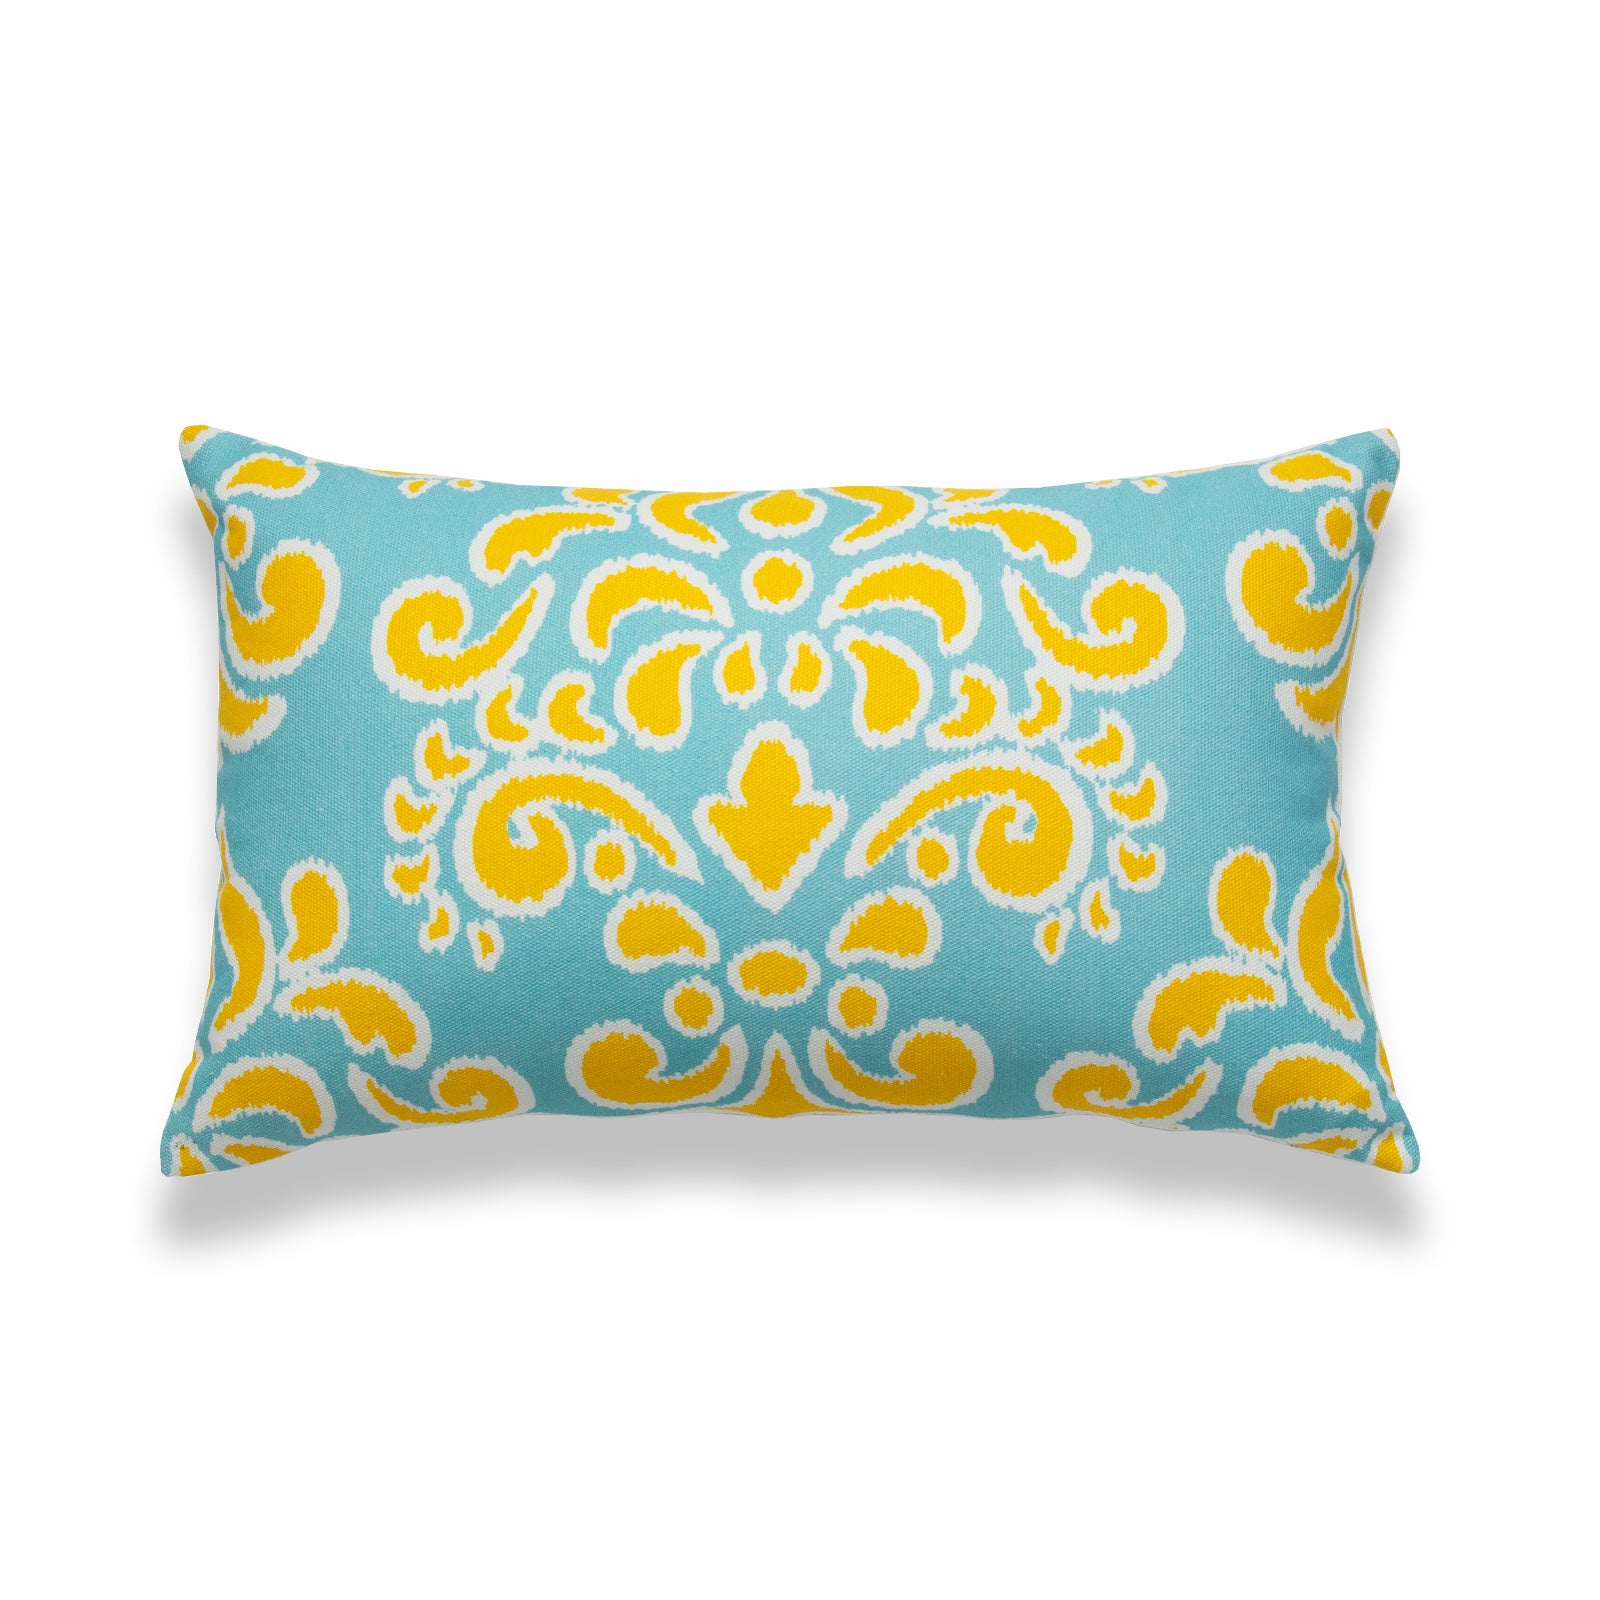 Ikat Inspired Lumbar Pillow Cover, Damask, Yellow Aqua , 12"x20"